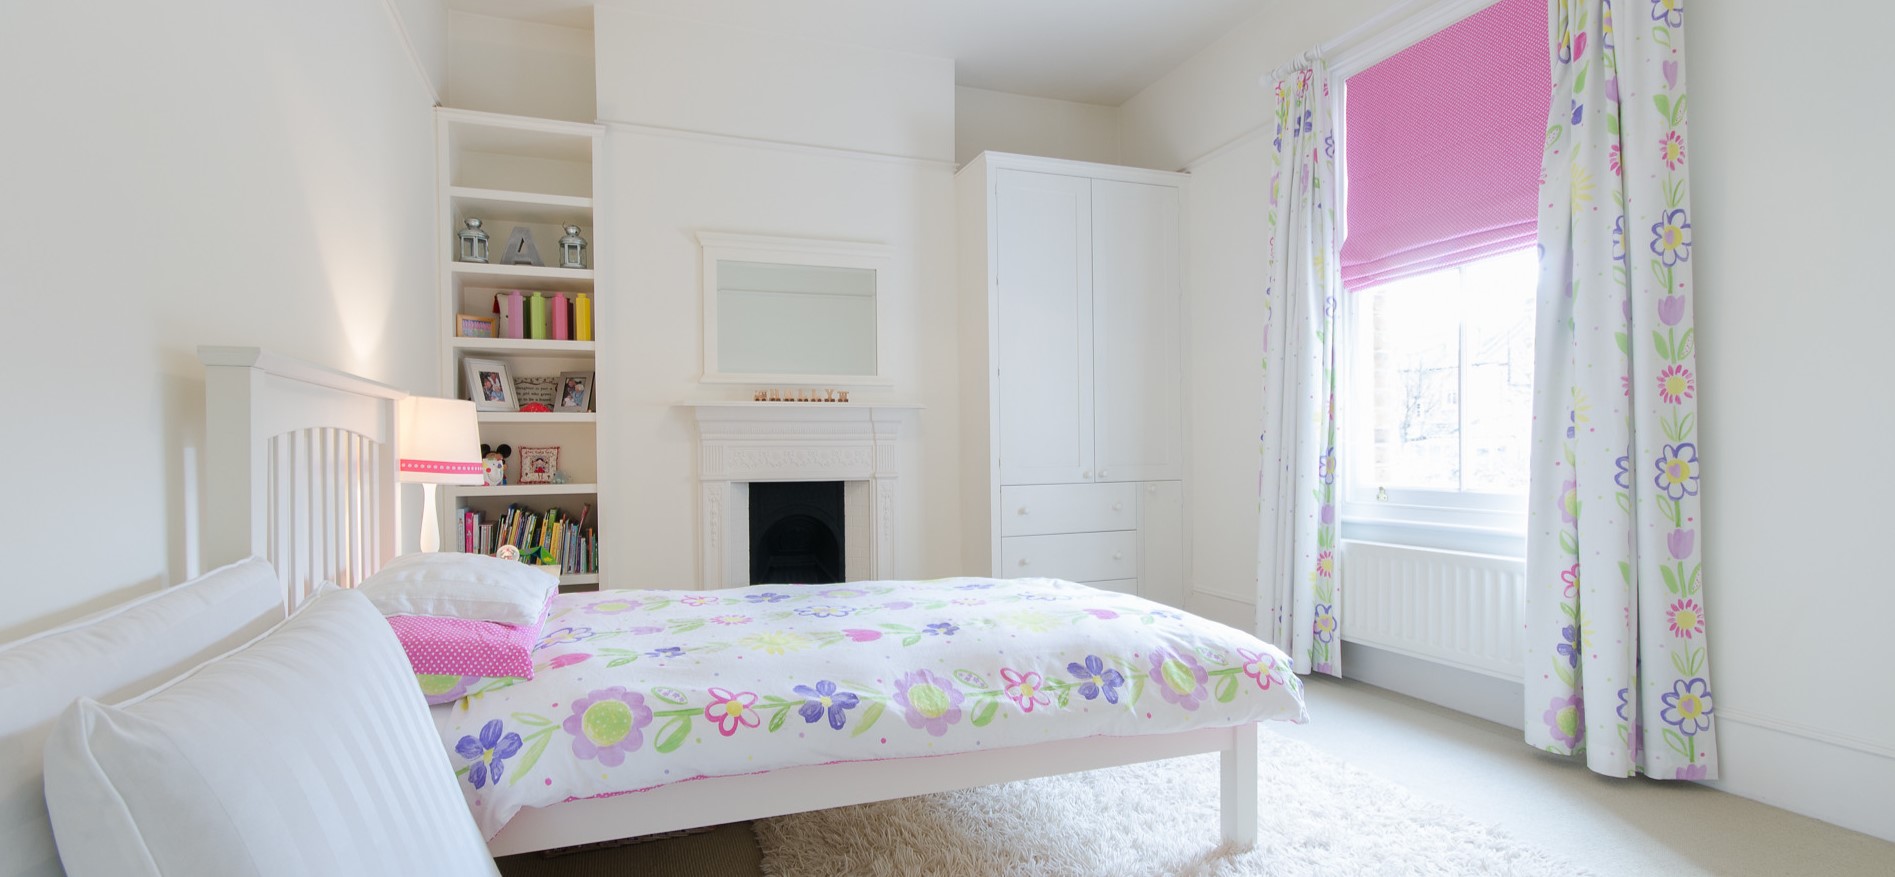 В комнате для девочки можно использовать цветочные рисунки и розовые акценты